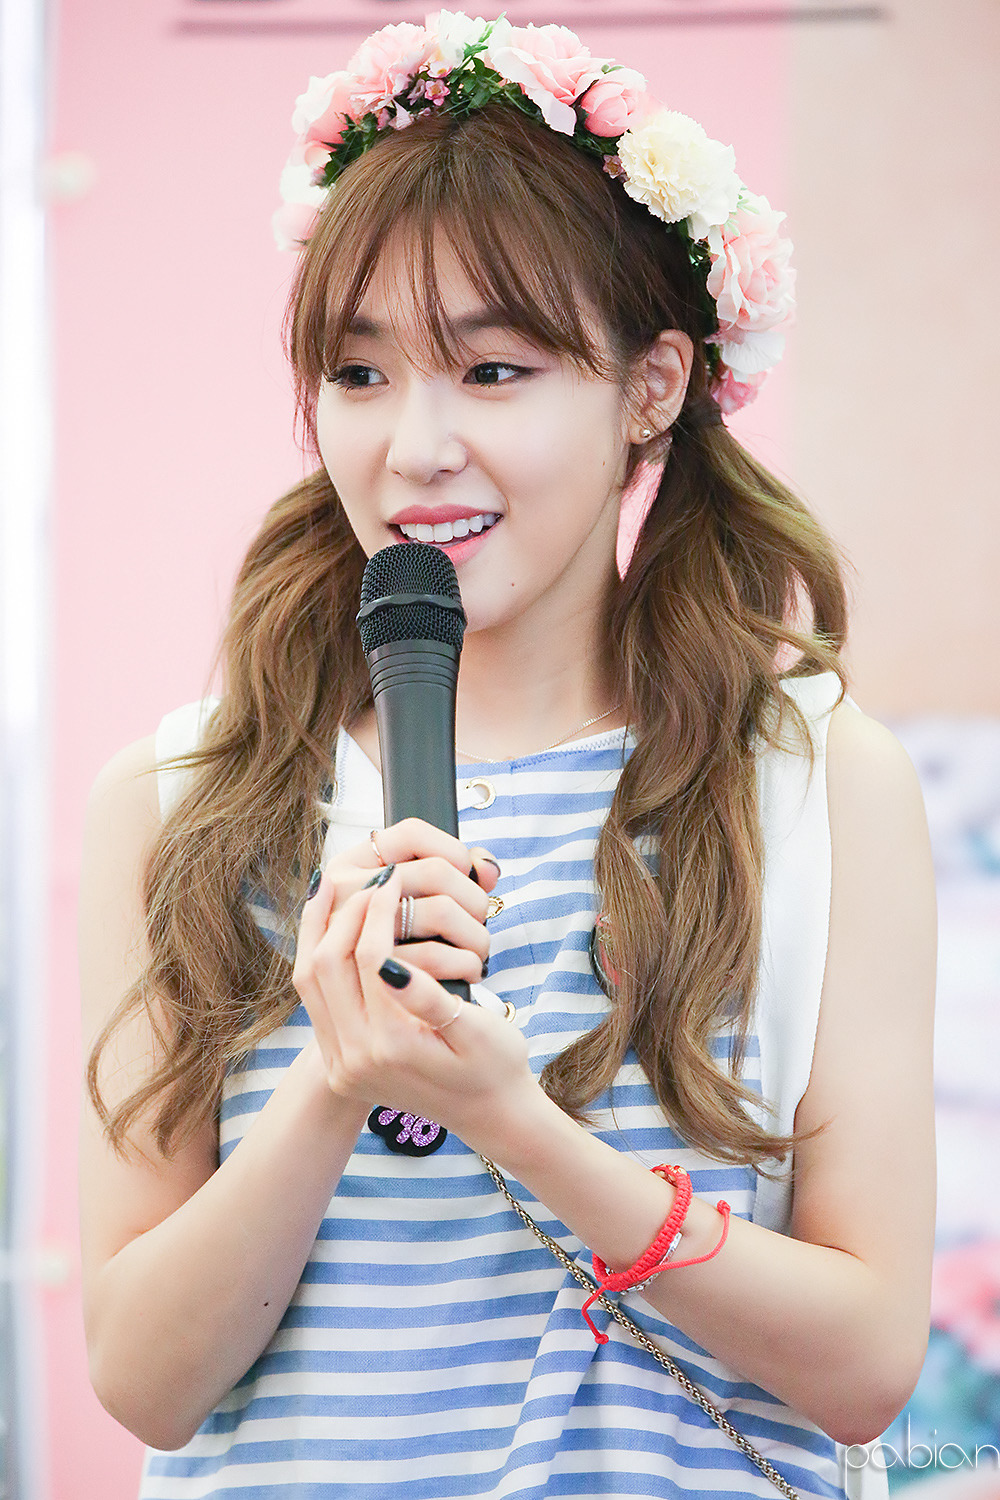 [PIC][06-06-2016]Tiffany tham dự buổi Fansign cho "I Just Wanna Dance" tại Busan vào chiều nay - Page 3 2257574F5756C3E9225B0B